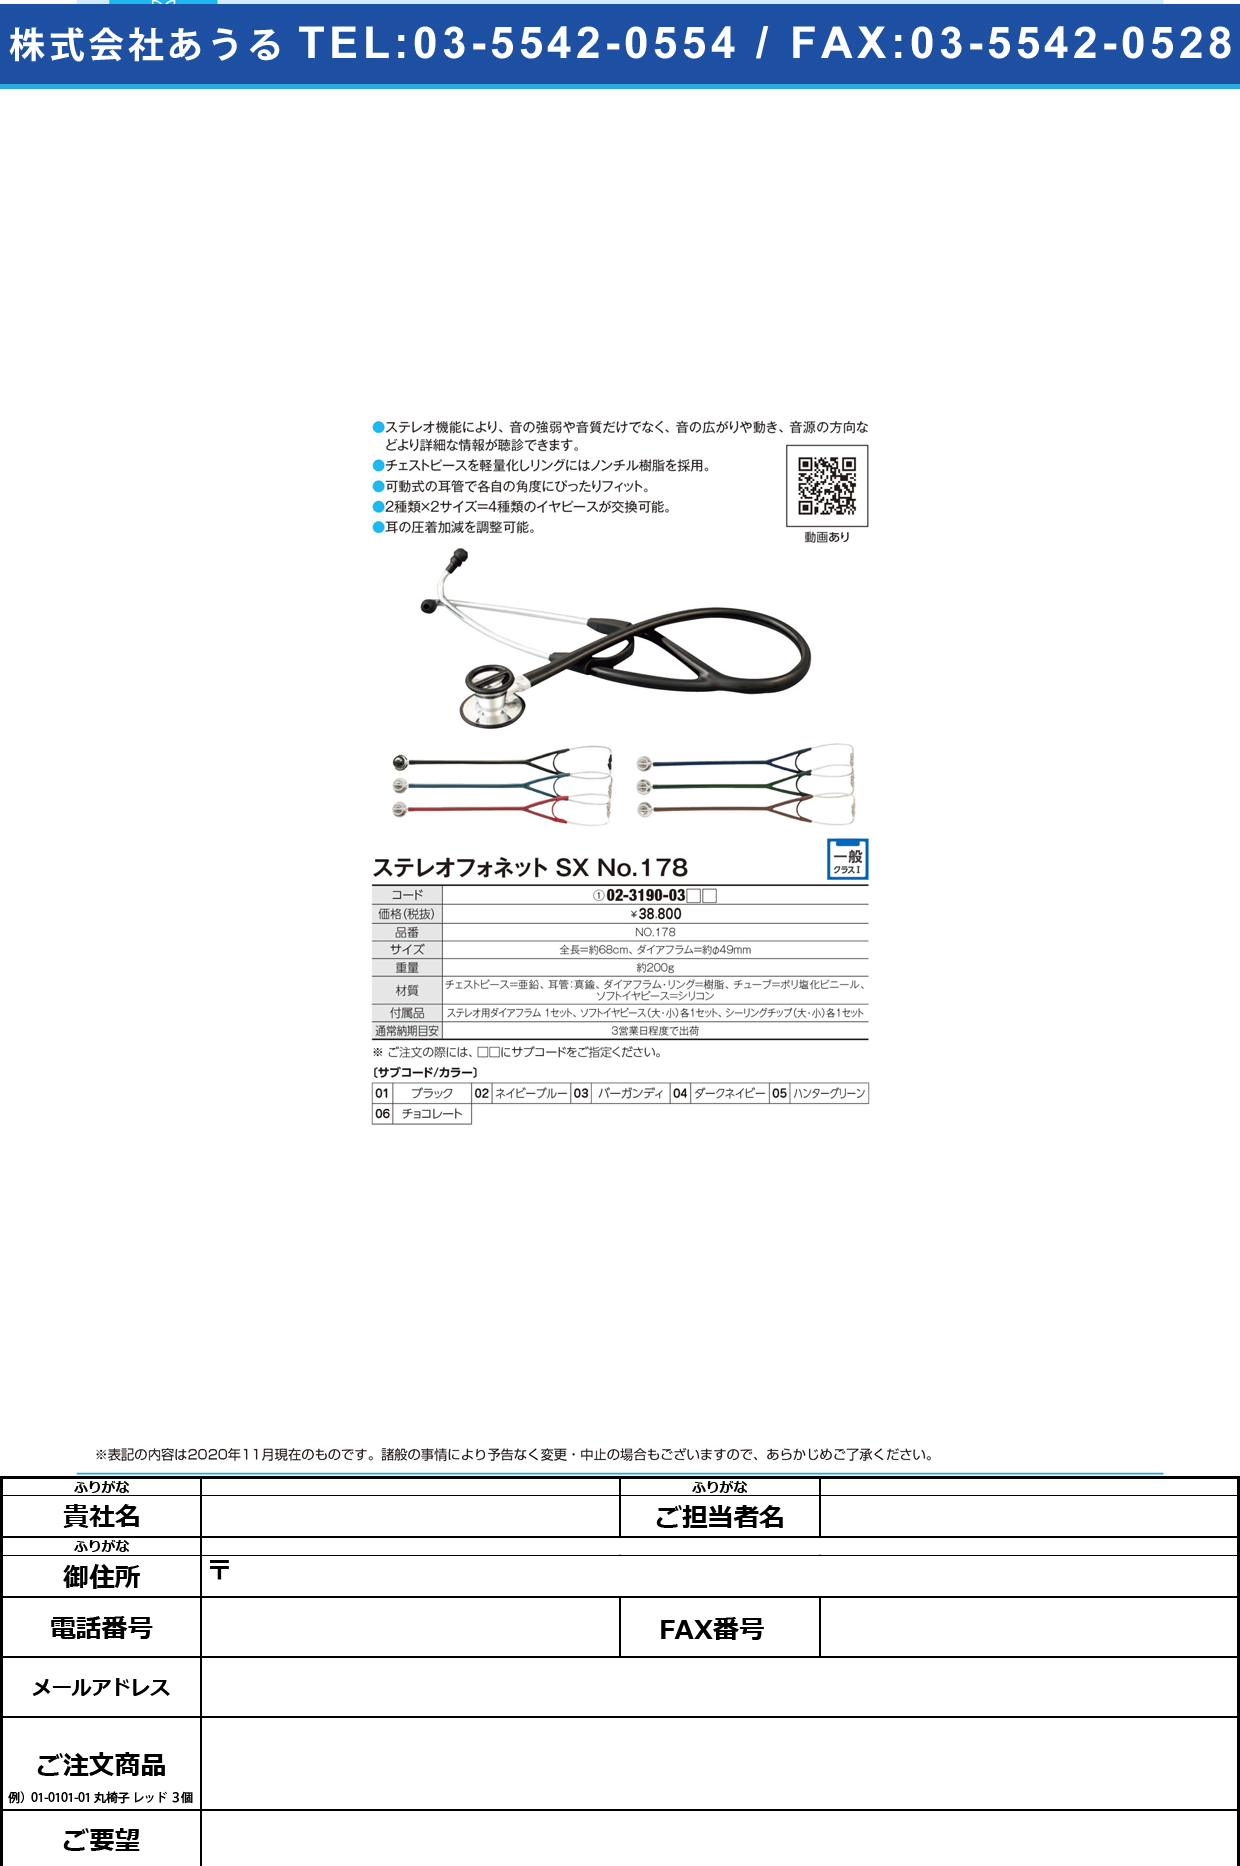 聴診器ステレオフォネットSX NO．178NO.178ネイビーブルー(02-3190-03-02)【ケンツメディコ】(販売単位:1)